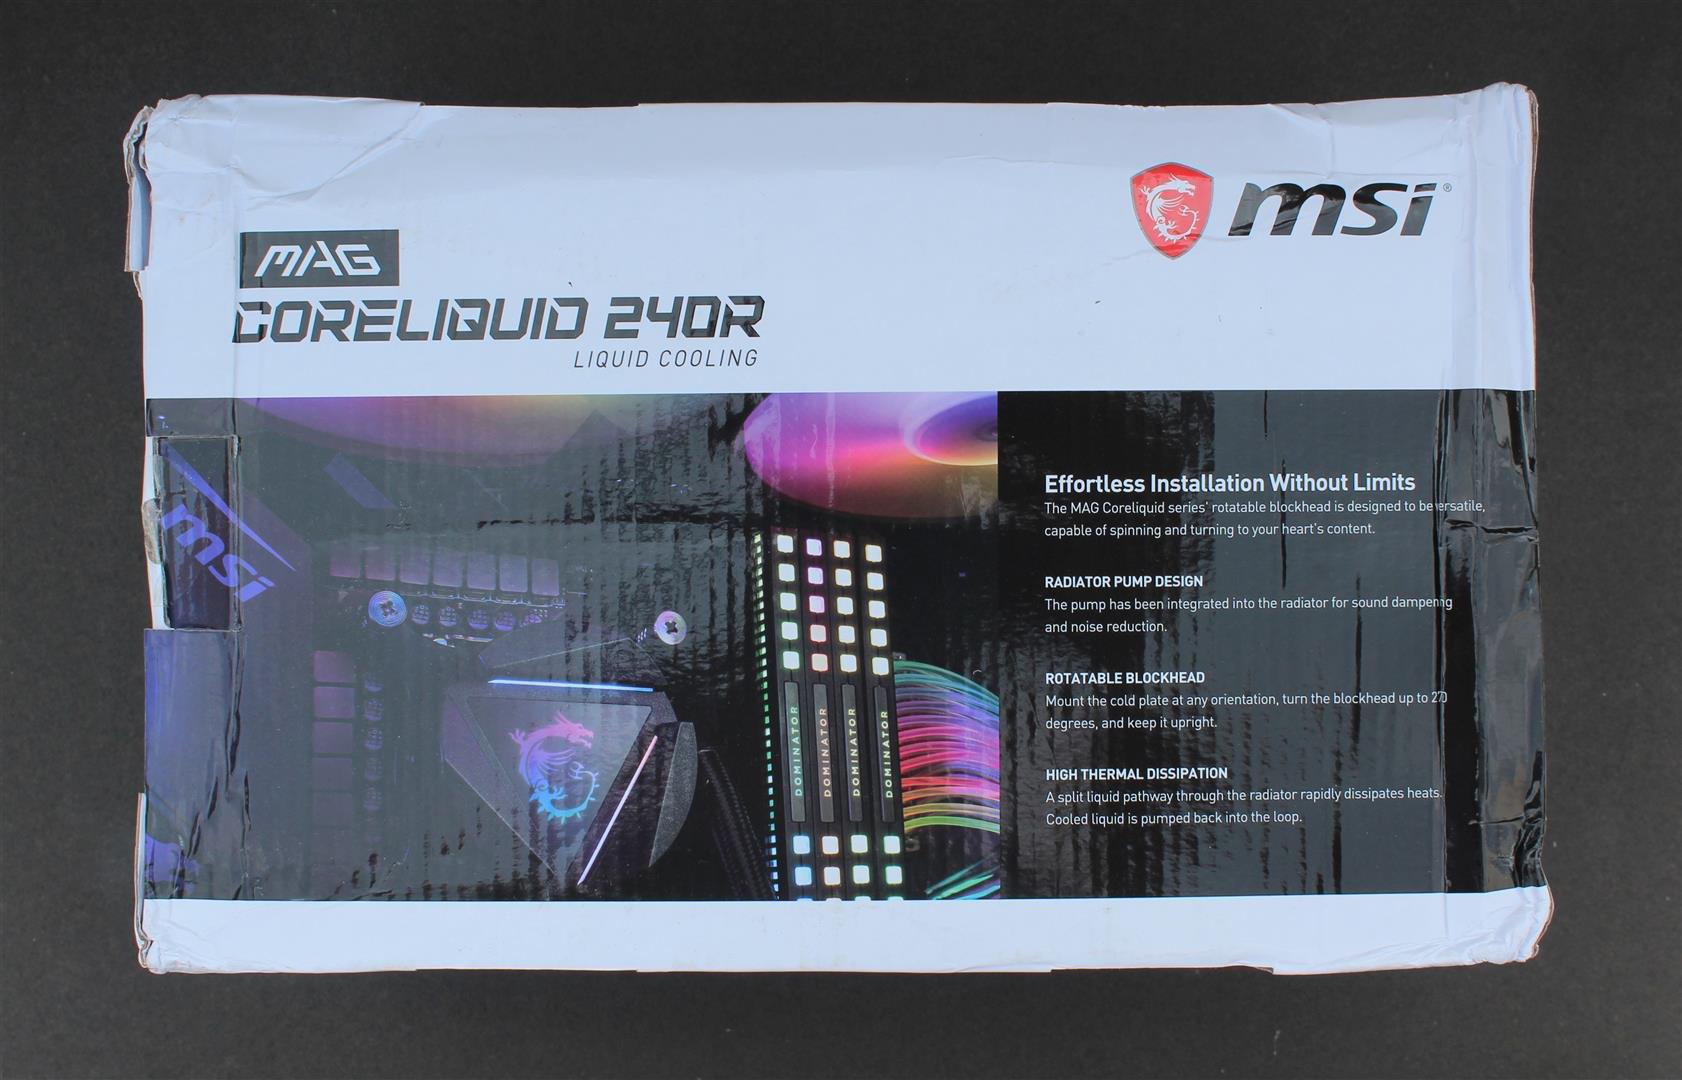  MSI MAG CoreLiquid 240R V2 - AIO ARGB CPU Liquid